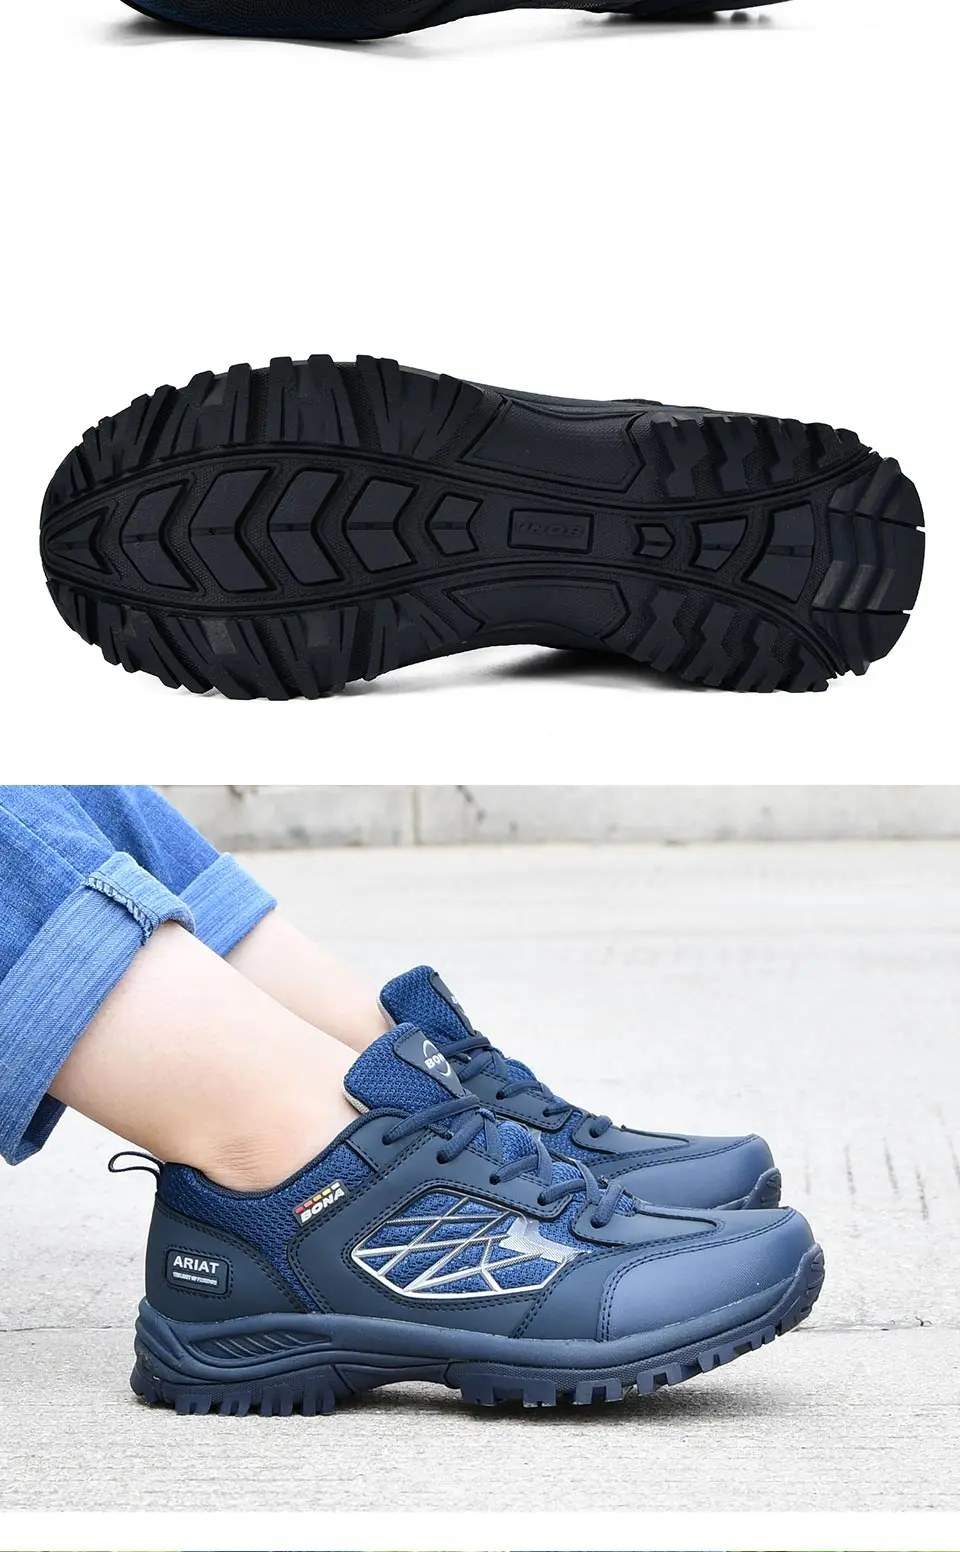 BONA/Новинка; Классические Стильные мужские ботинки для пешего туризма; Мужская Спортивная обувь из кожи; обувь для бега на открытом воздухе; удобная быстрая